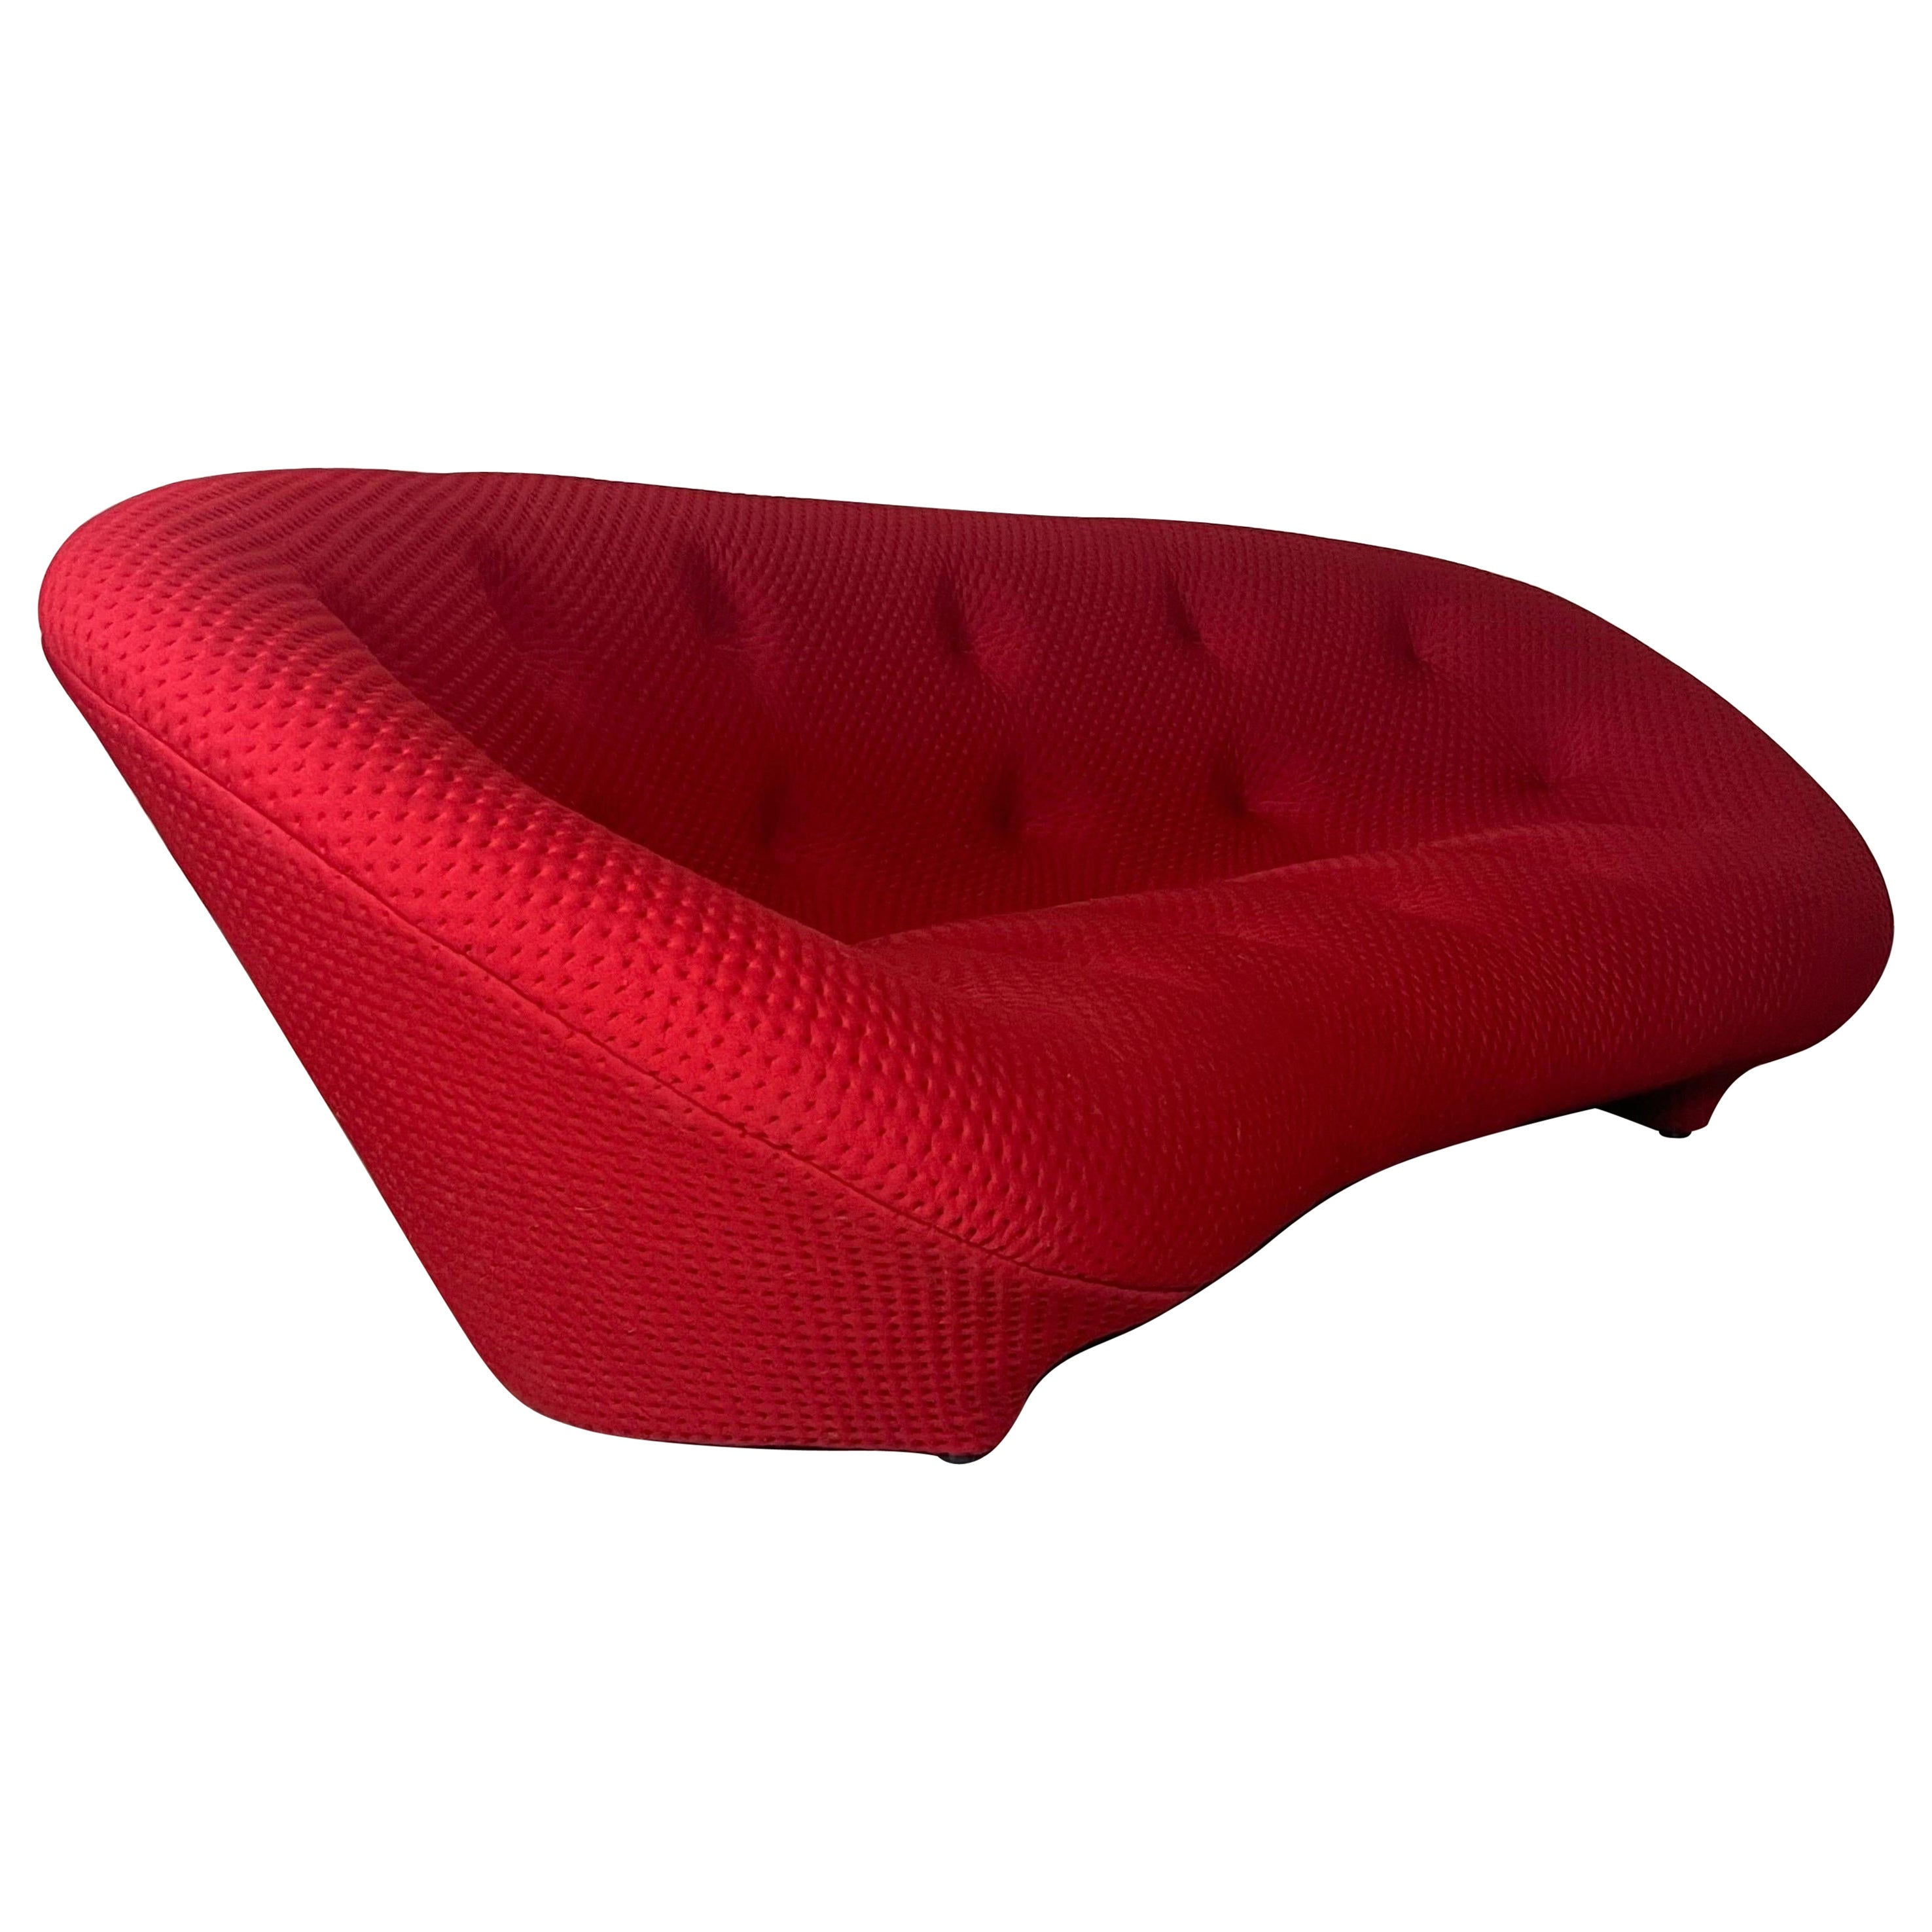 Ploum sofa by R. & E. Bouroullec for Ligne Roset